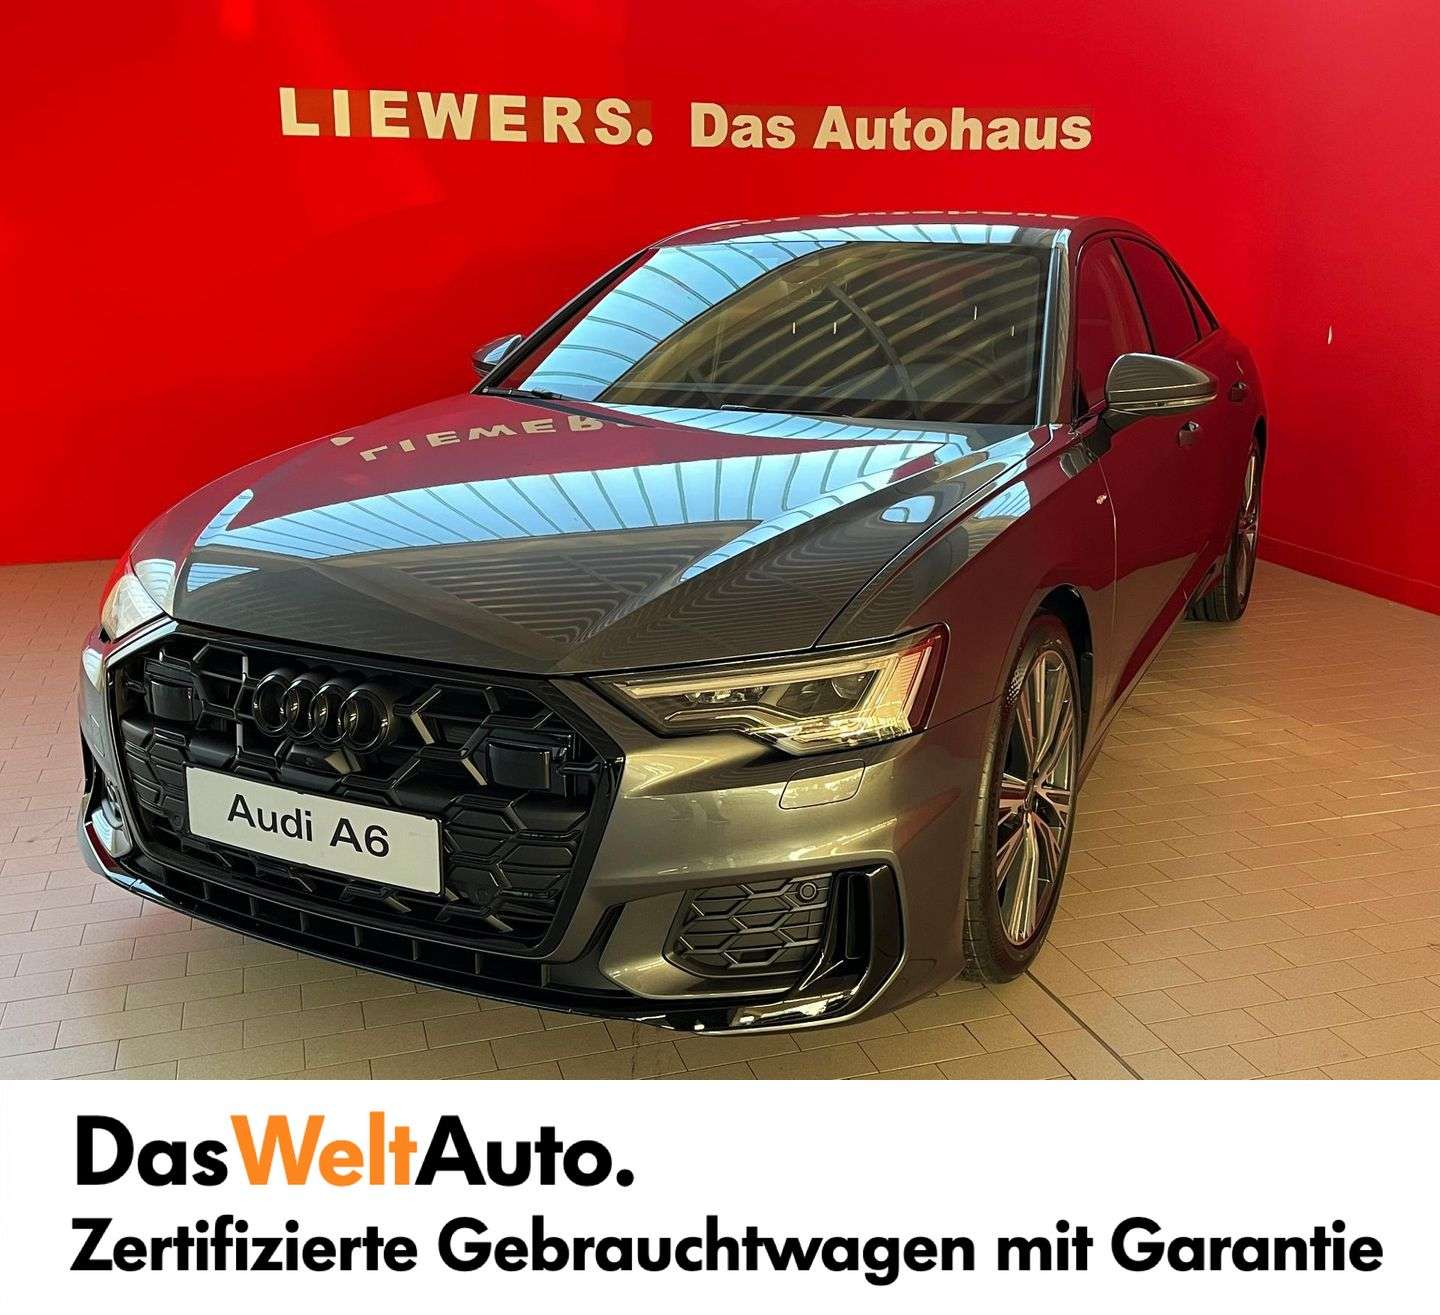 Audi A6 Sedan in Grey used in Wien for € 69,890.-